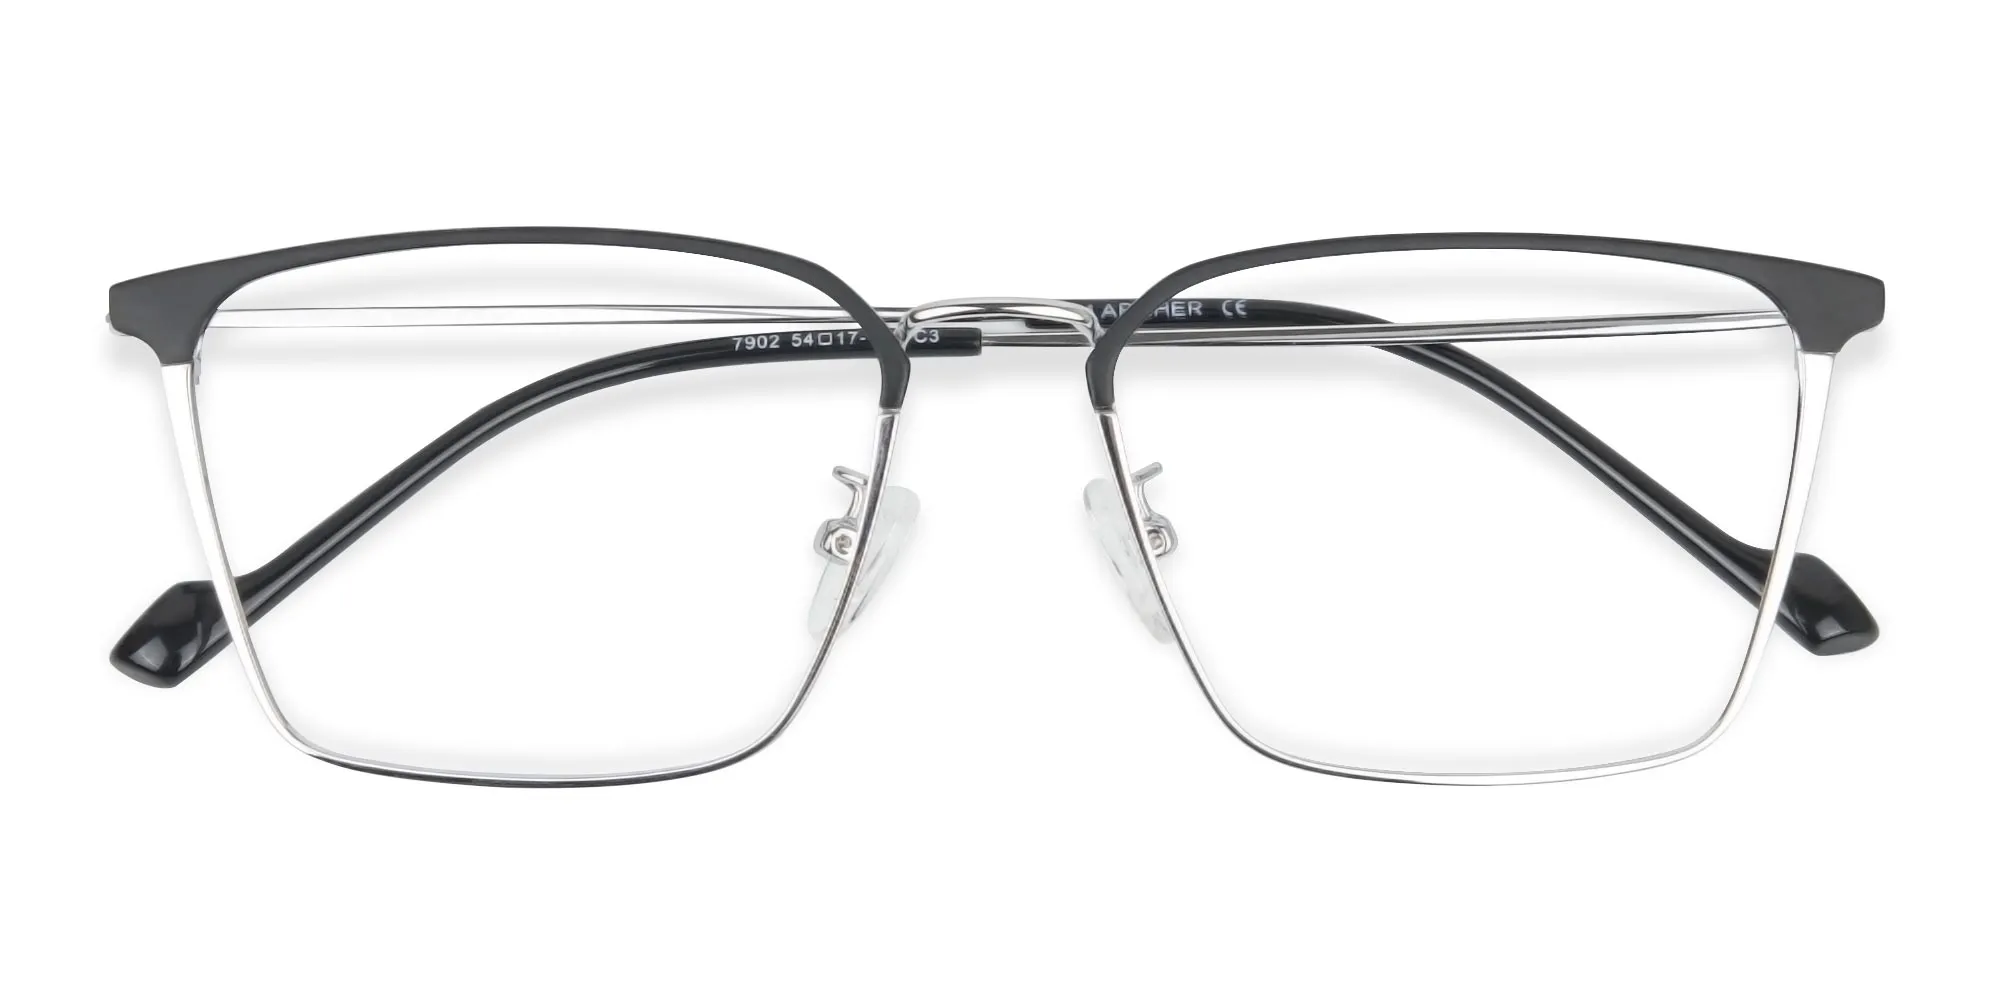 Silver Wayfarer Glasses in Lightweight Metal-2